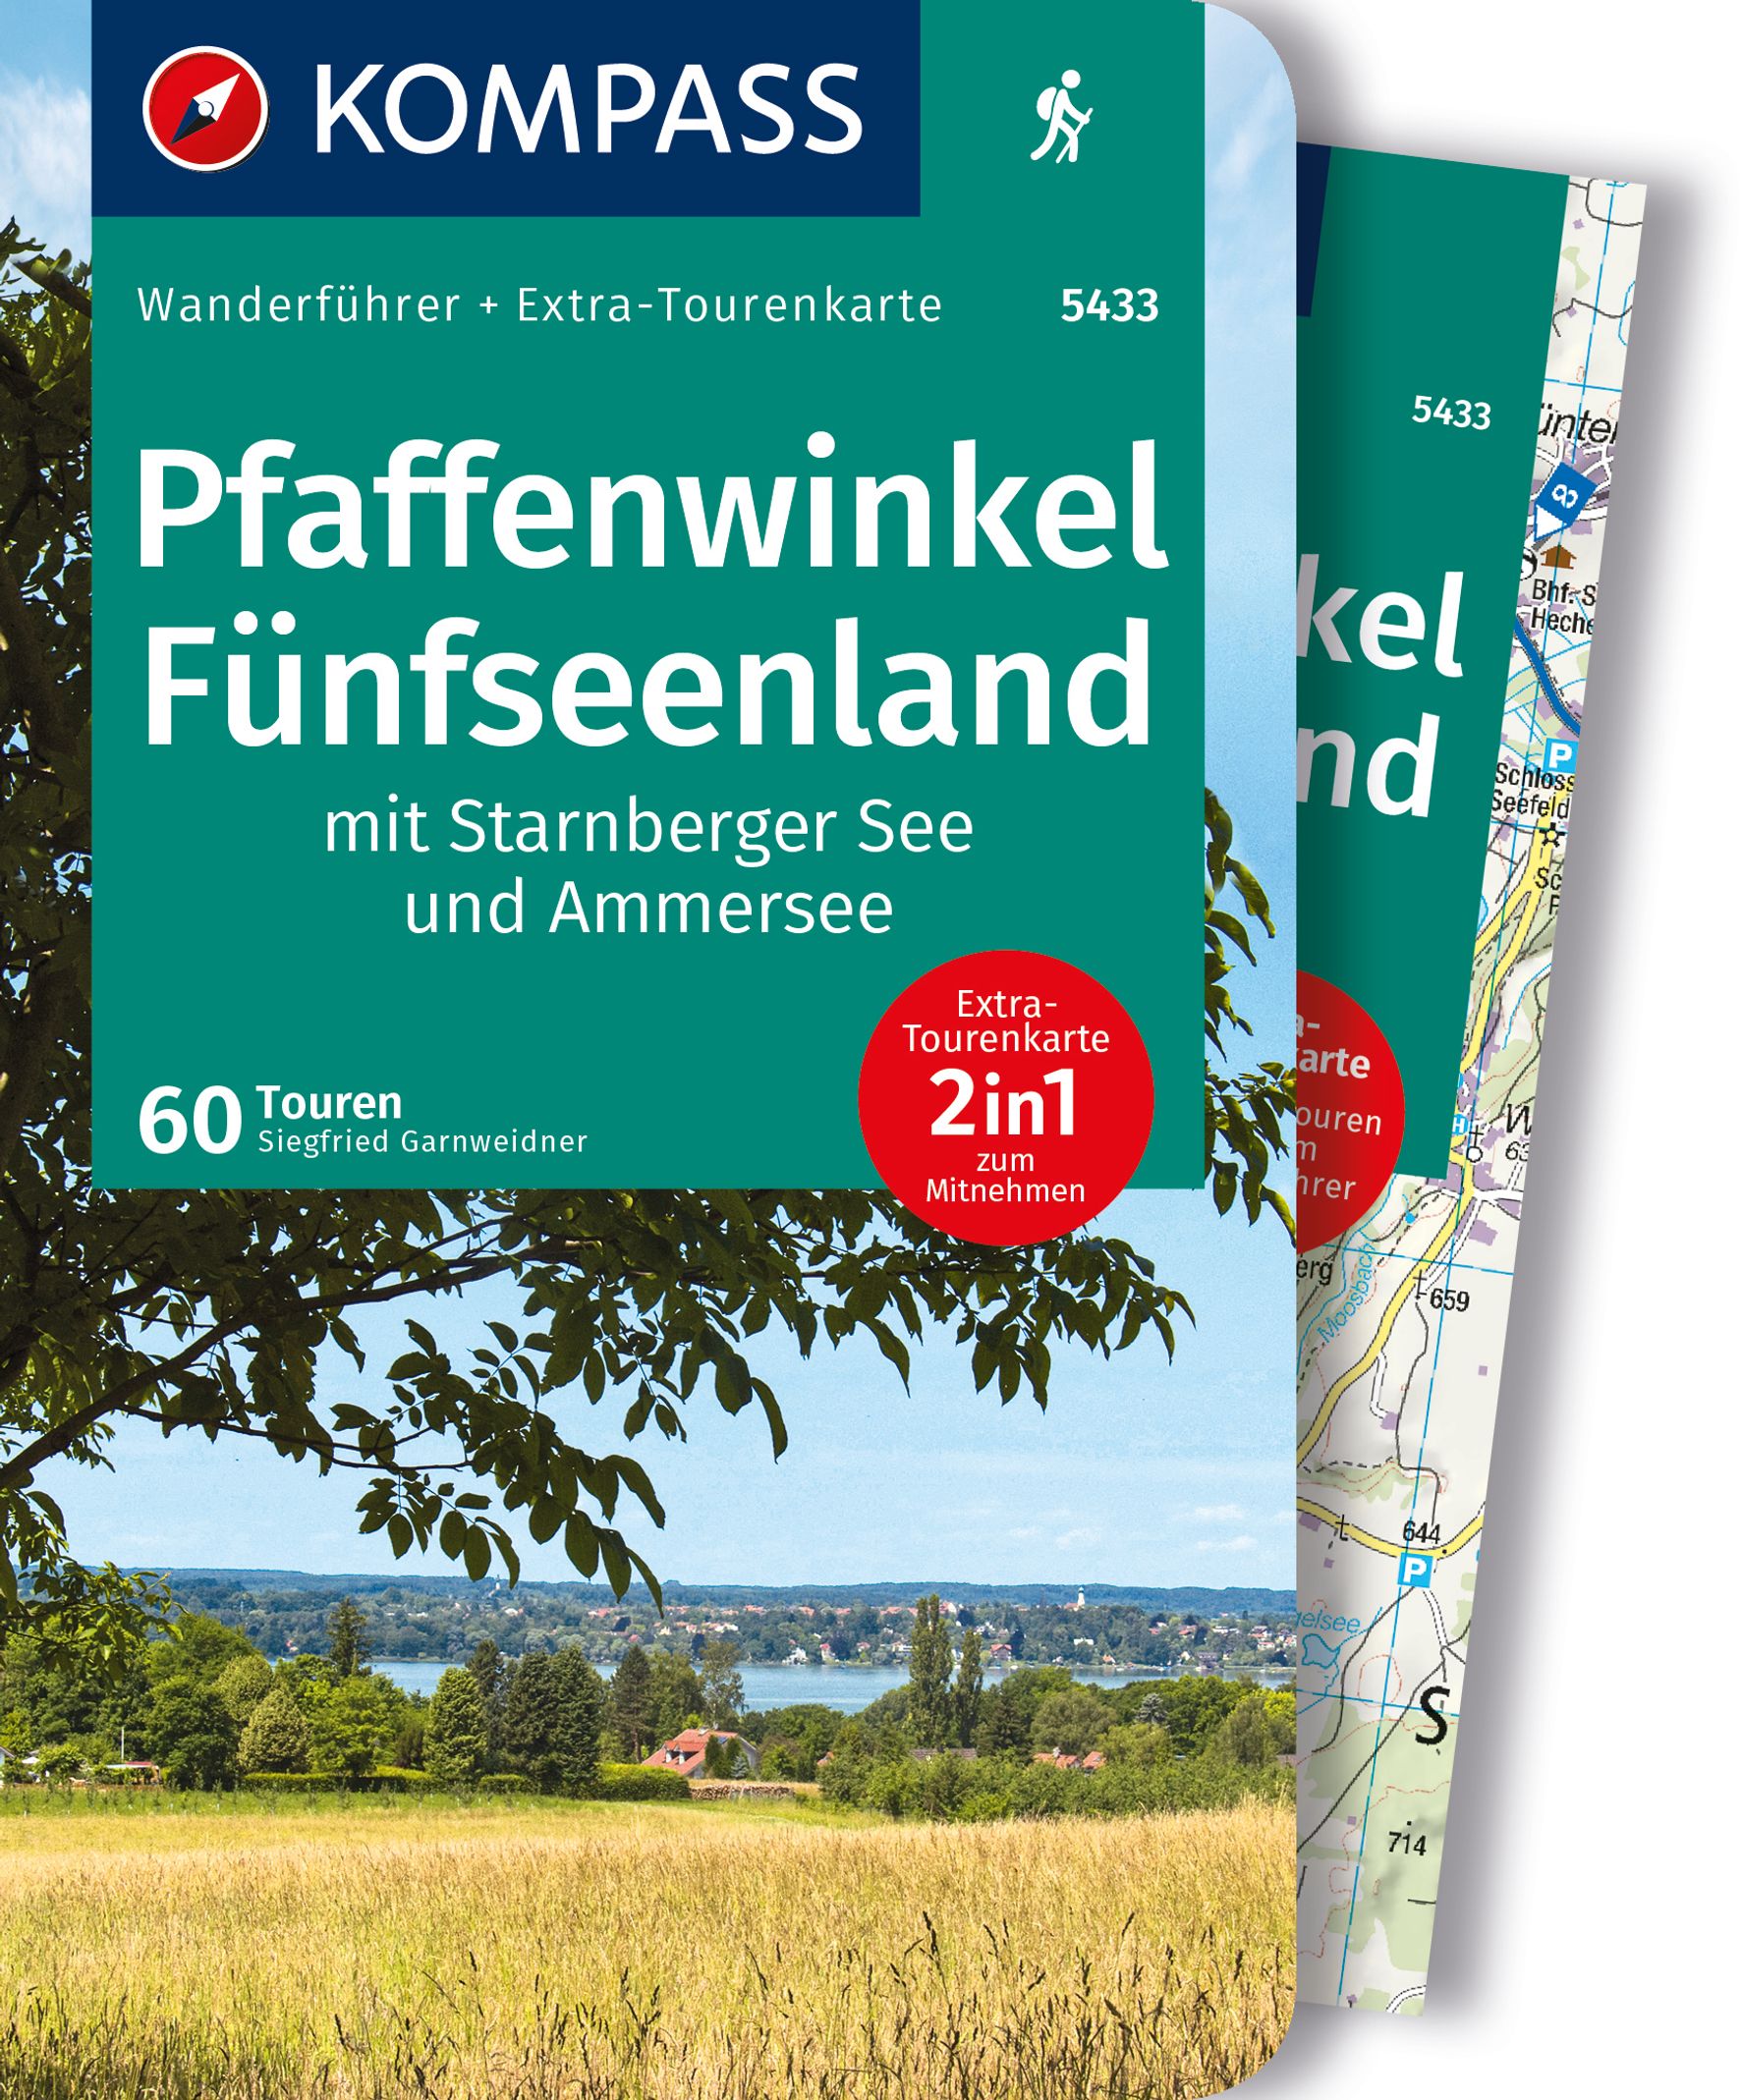 MAIRDUMONT Pfaffenwinkel, Fünfseenland, Starnberger See, Ammersee, 60 Touren mit Extra-Tourenkarte